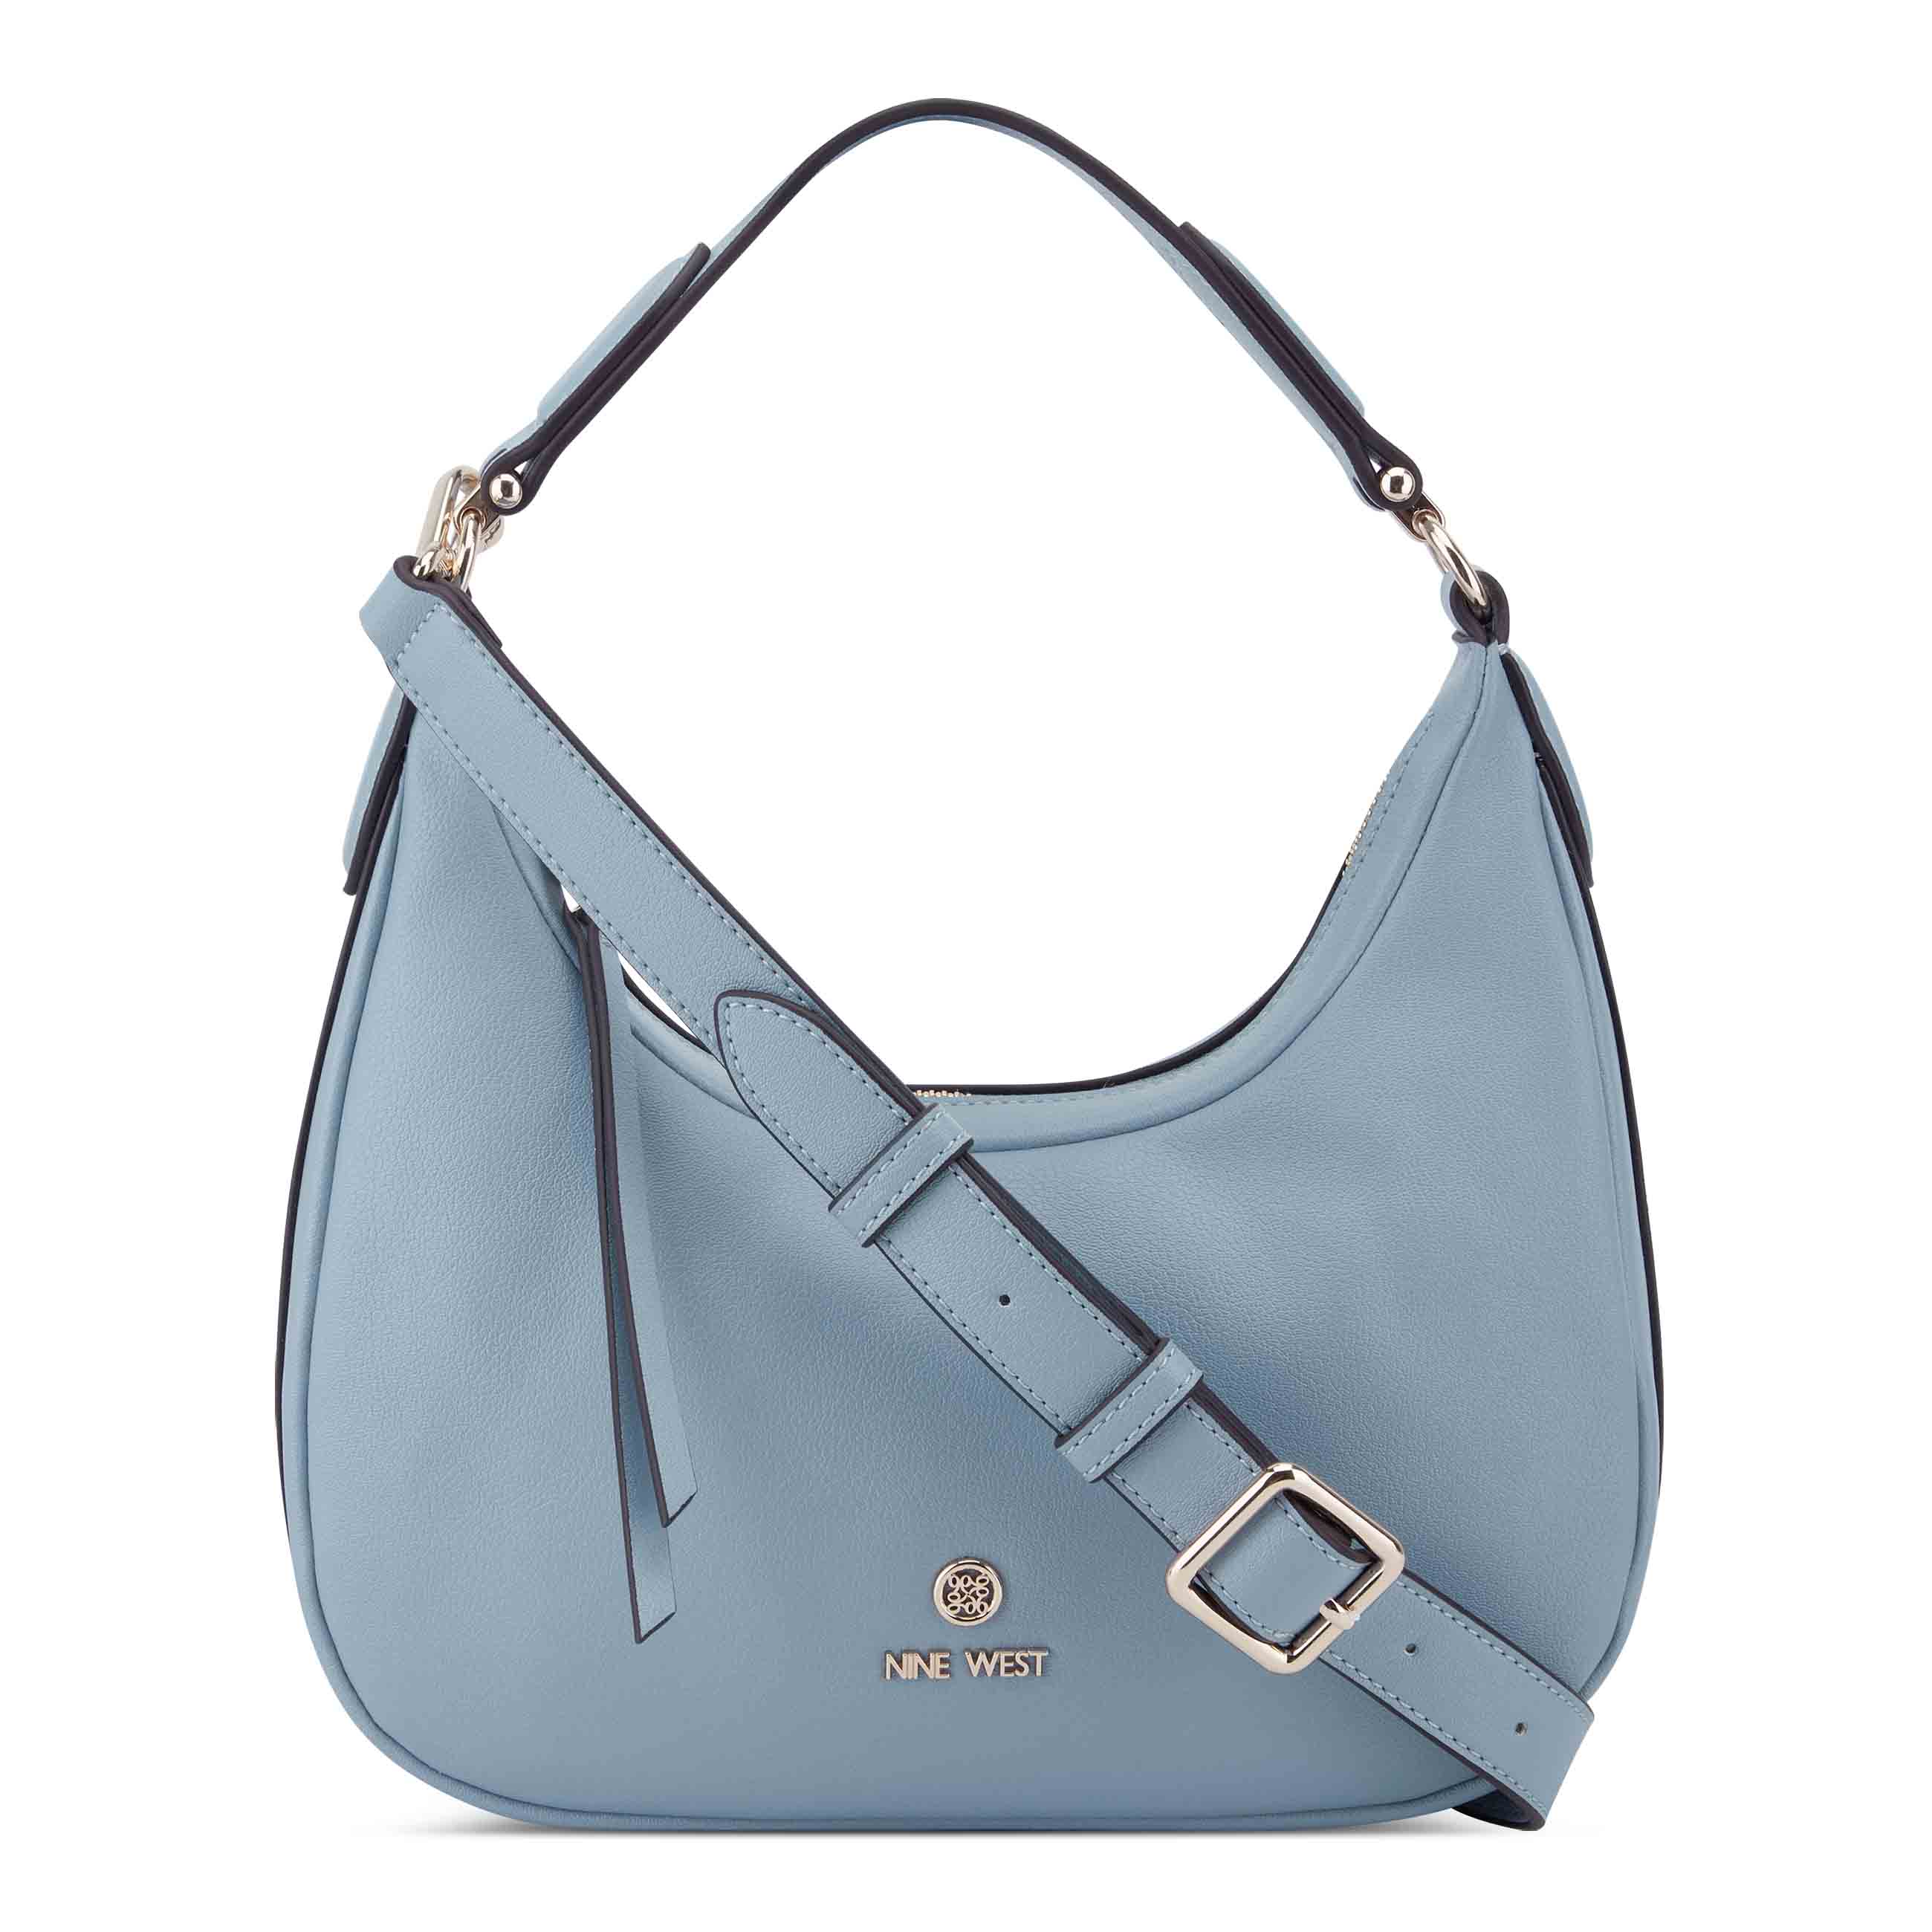 Louis Vuitton Handbags for sale in Venice Gardens | Facebook Marketplace |  Facebook